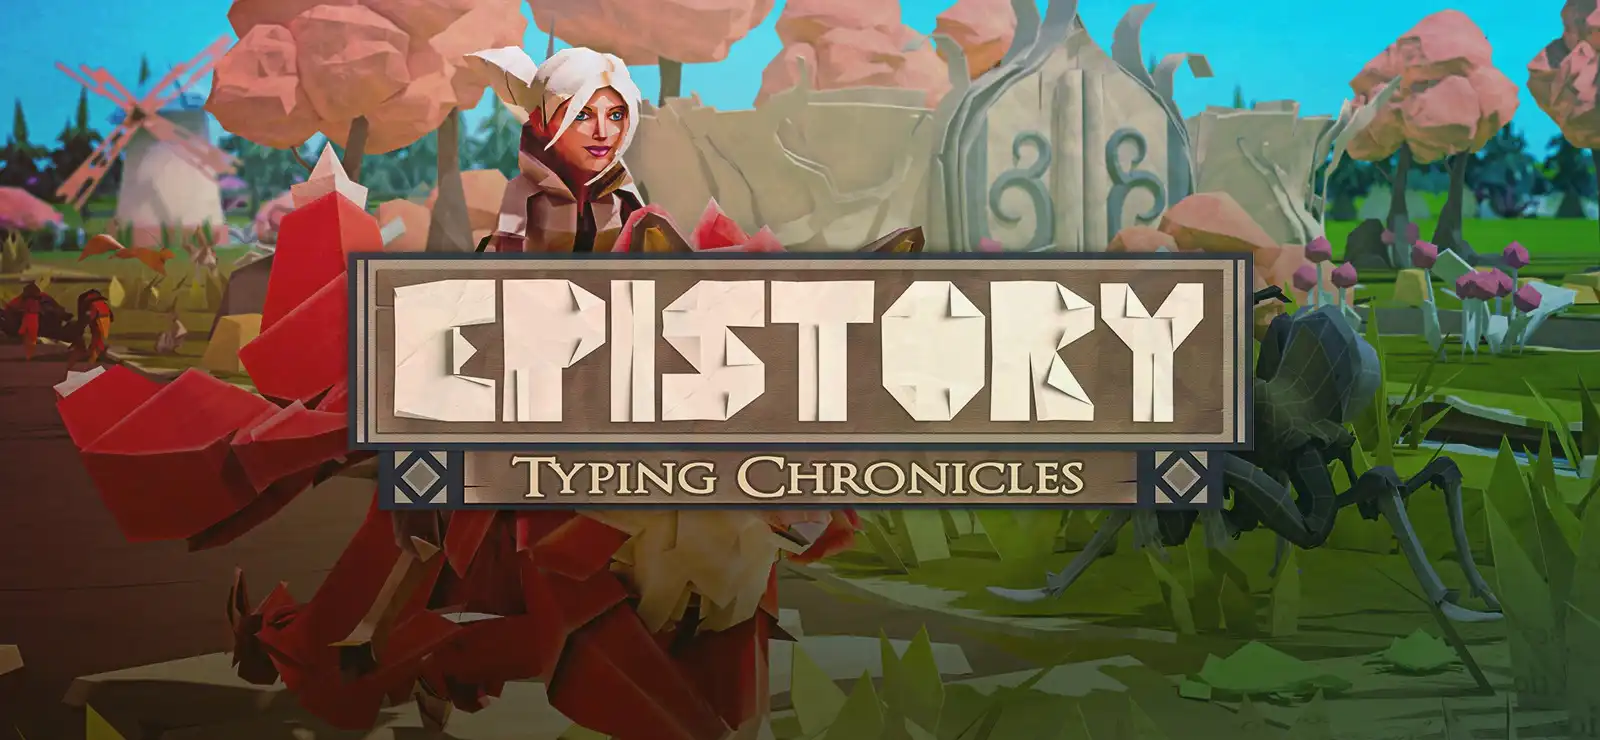 Обзор игры Epistory - Typing Chronicles: Магия Слов и Быстрой Печати